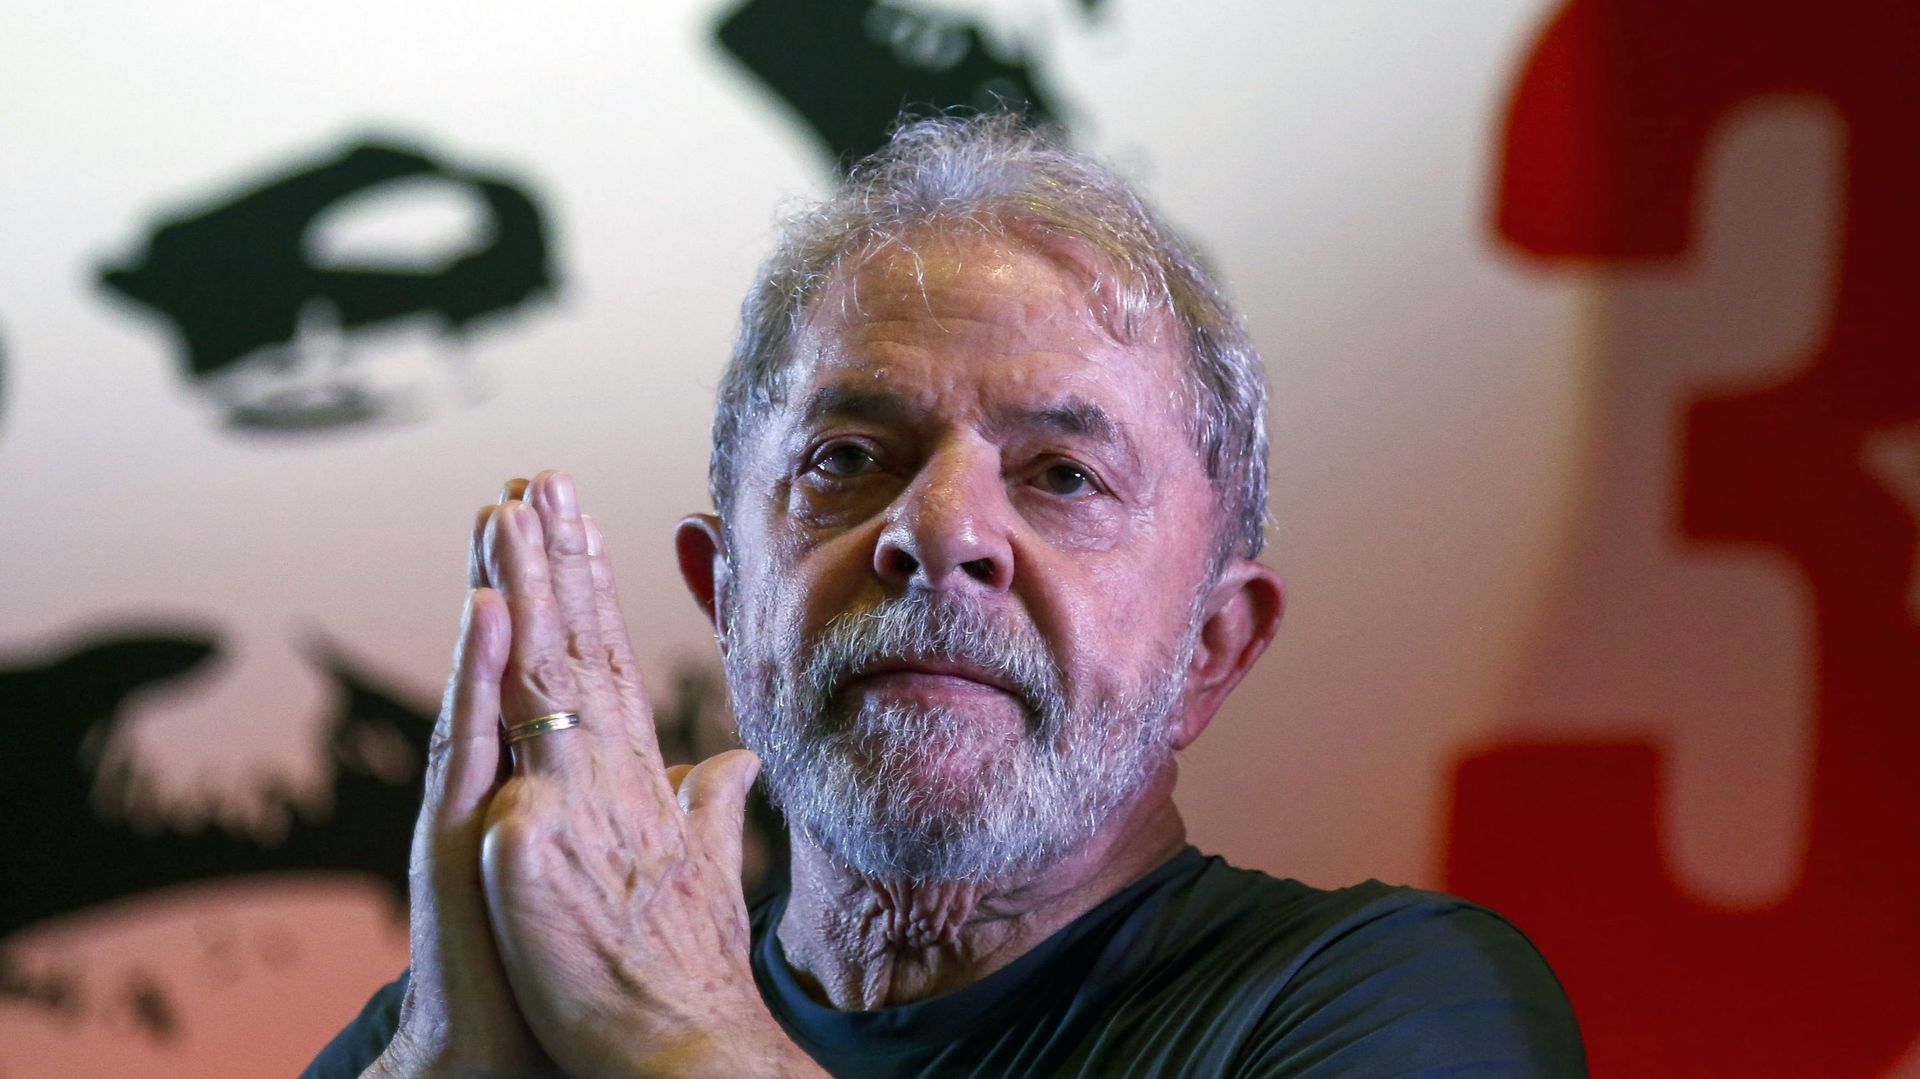 Même si la plupart des analystes le jugent politiquement mort avant même que tous les recours ne soient épuisés, Lula s'est montré très confiant de pouvoir concourir, et même de remporter le scrutin "dès le premier tour".